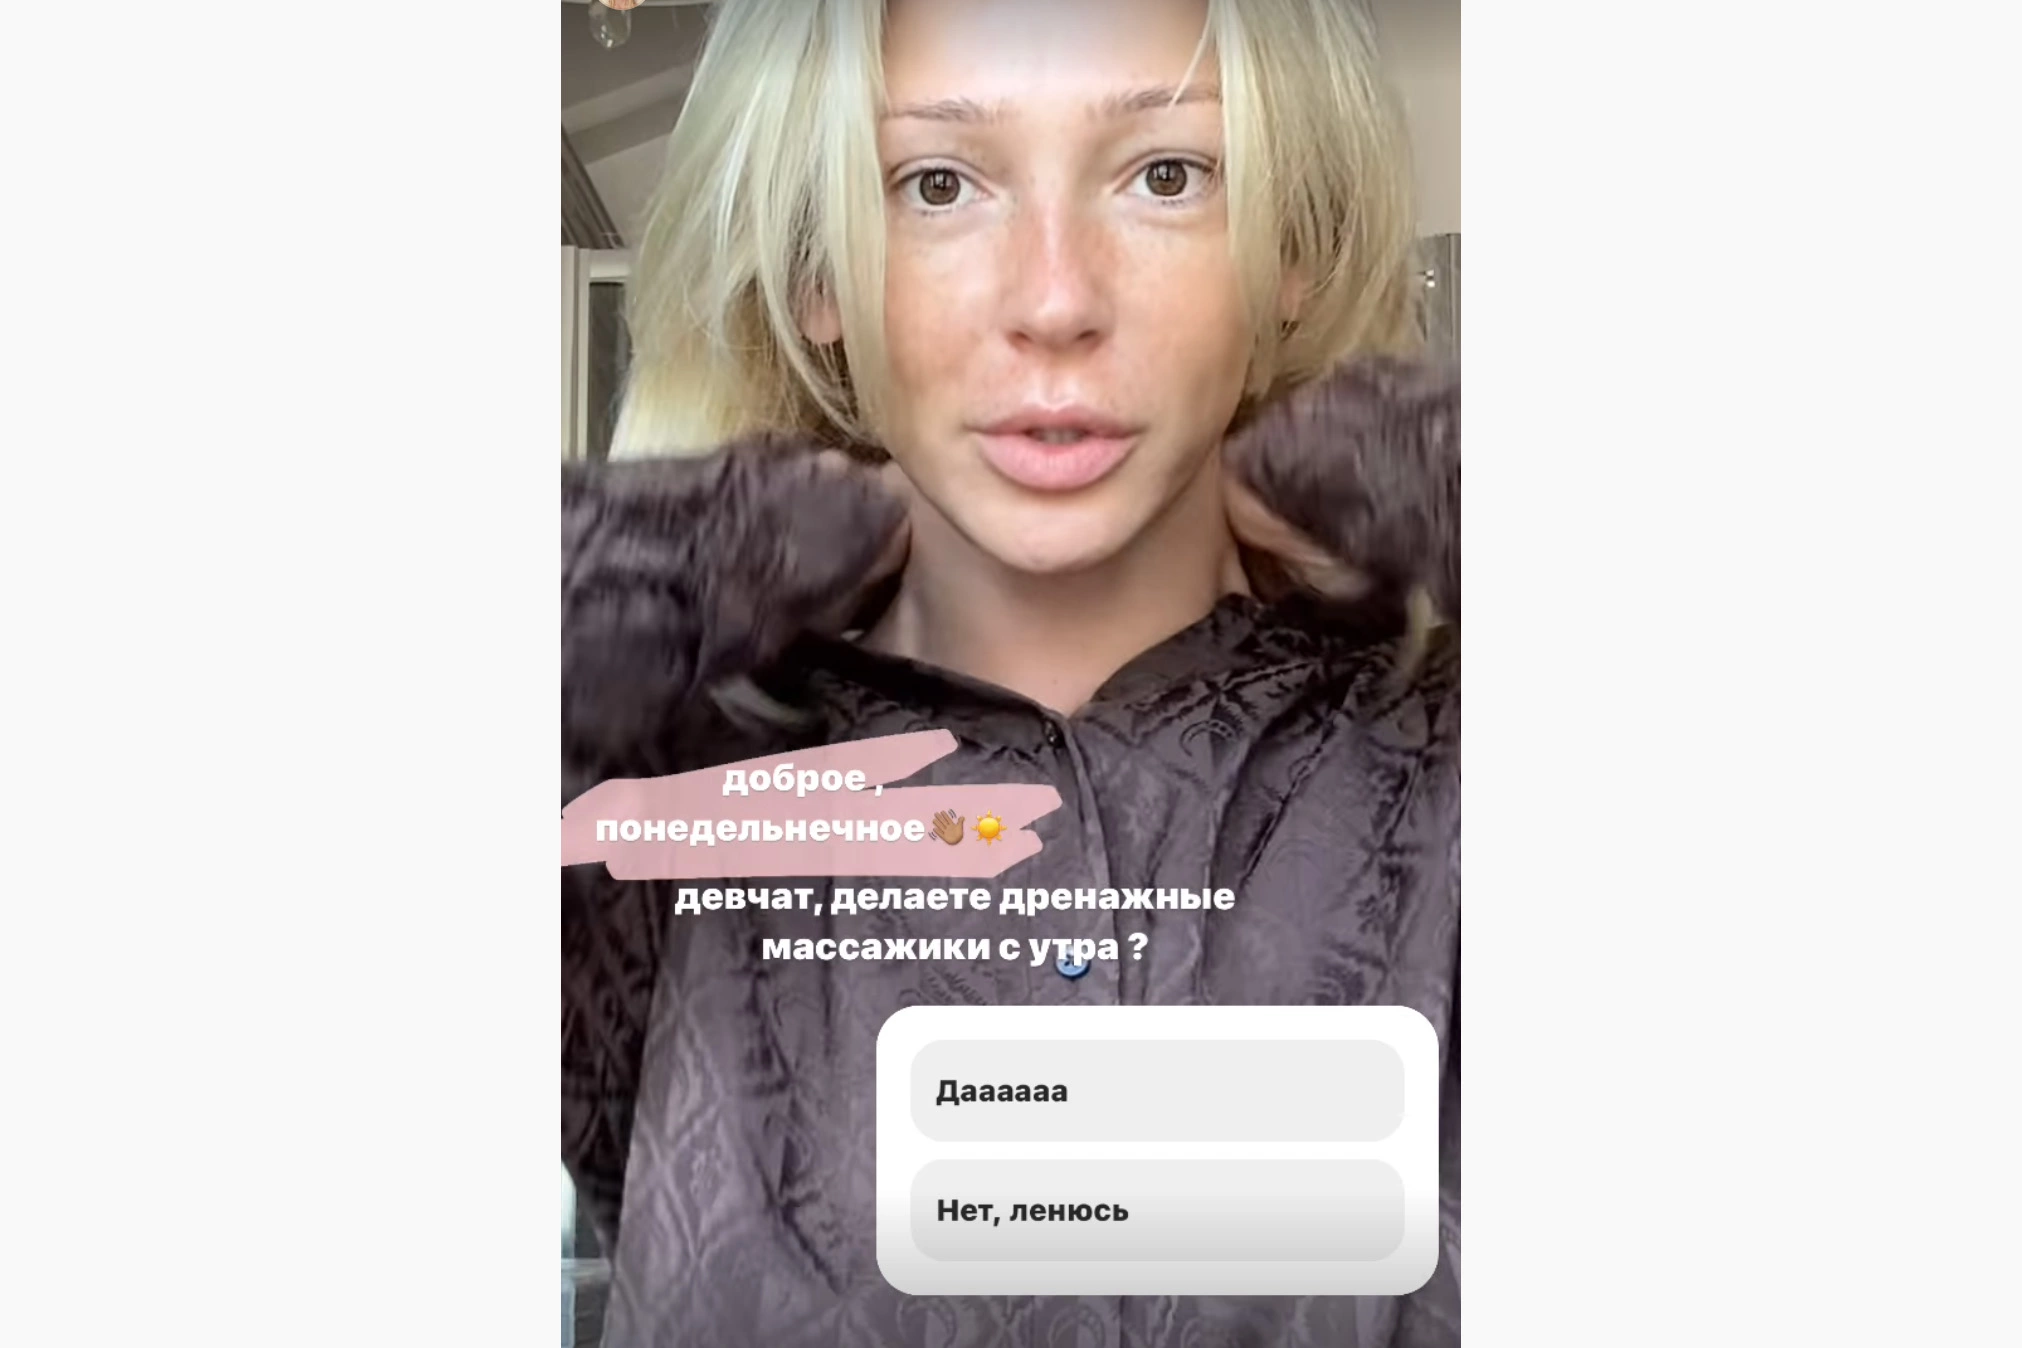 _agentgirl_ / Instagram (входит в корпорацию Meta, признана экстремистской и запрещена в России)